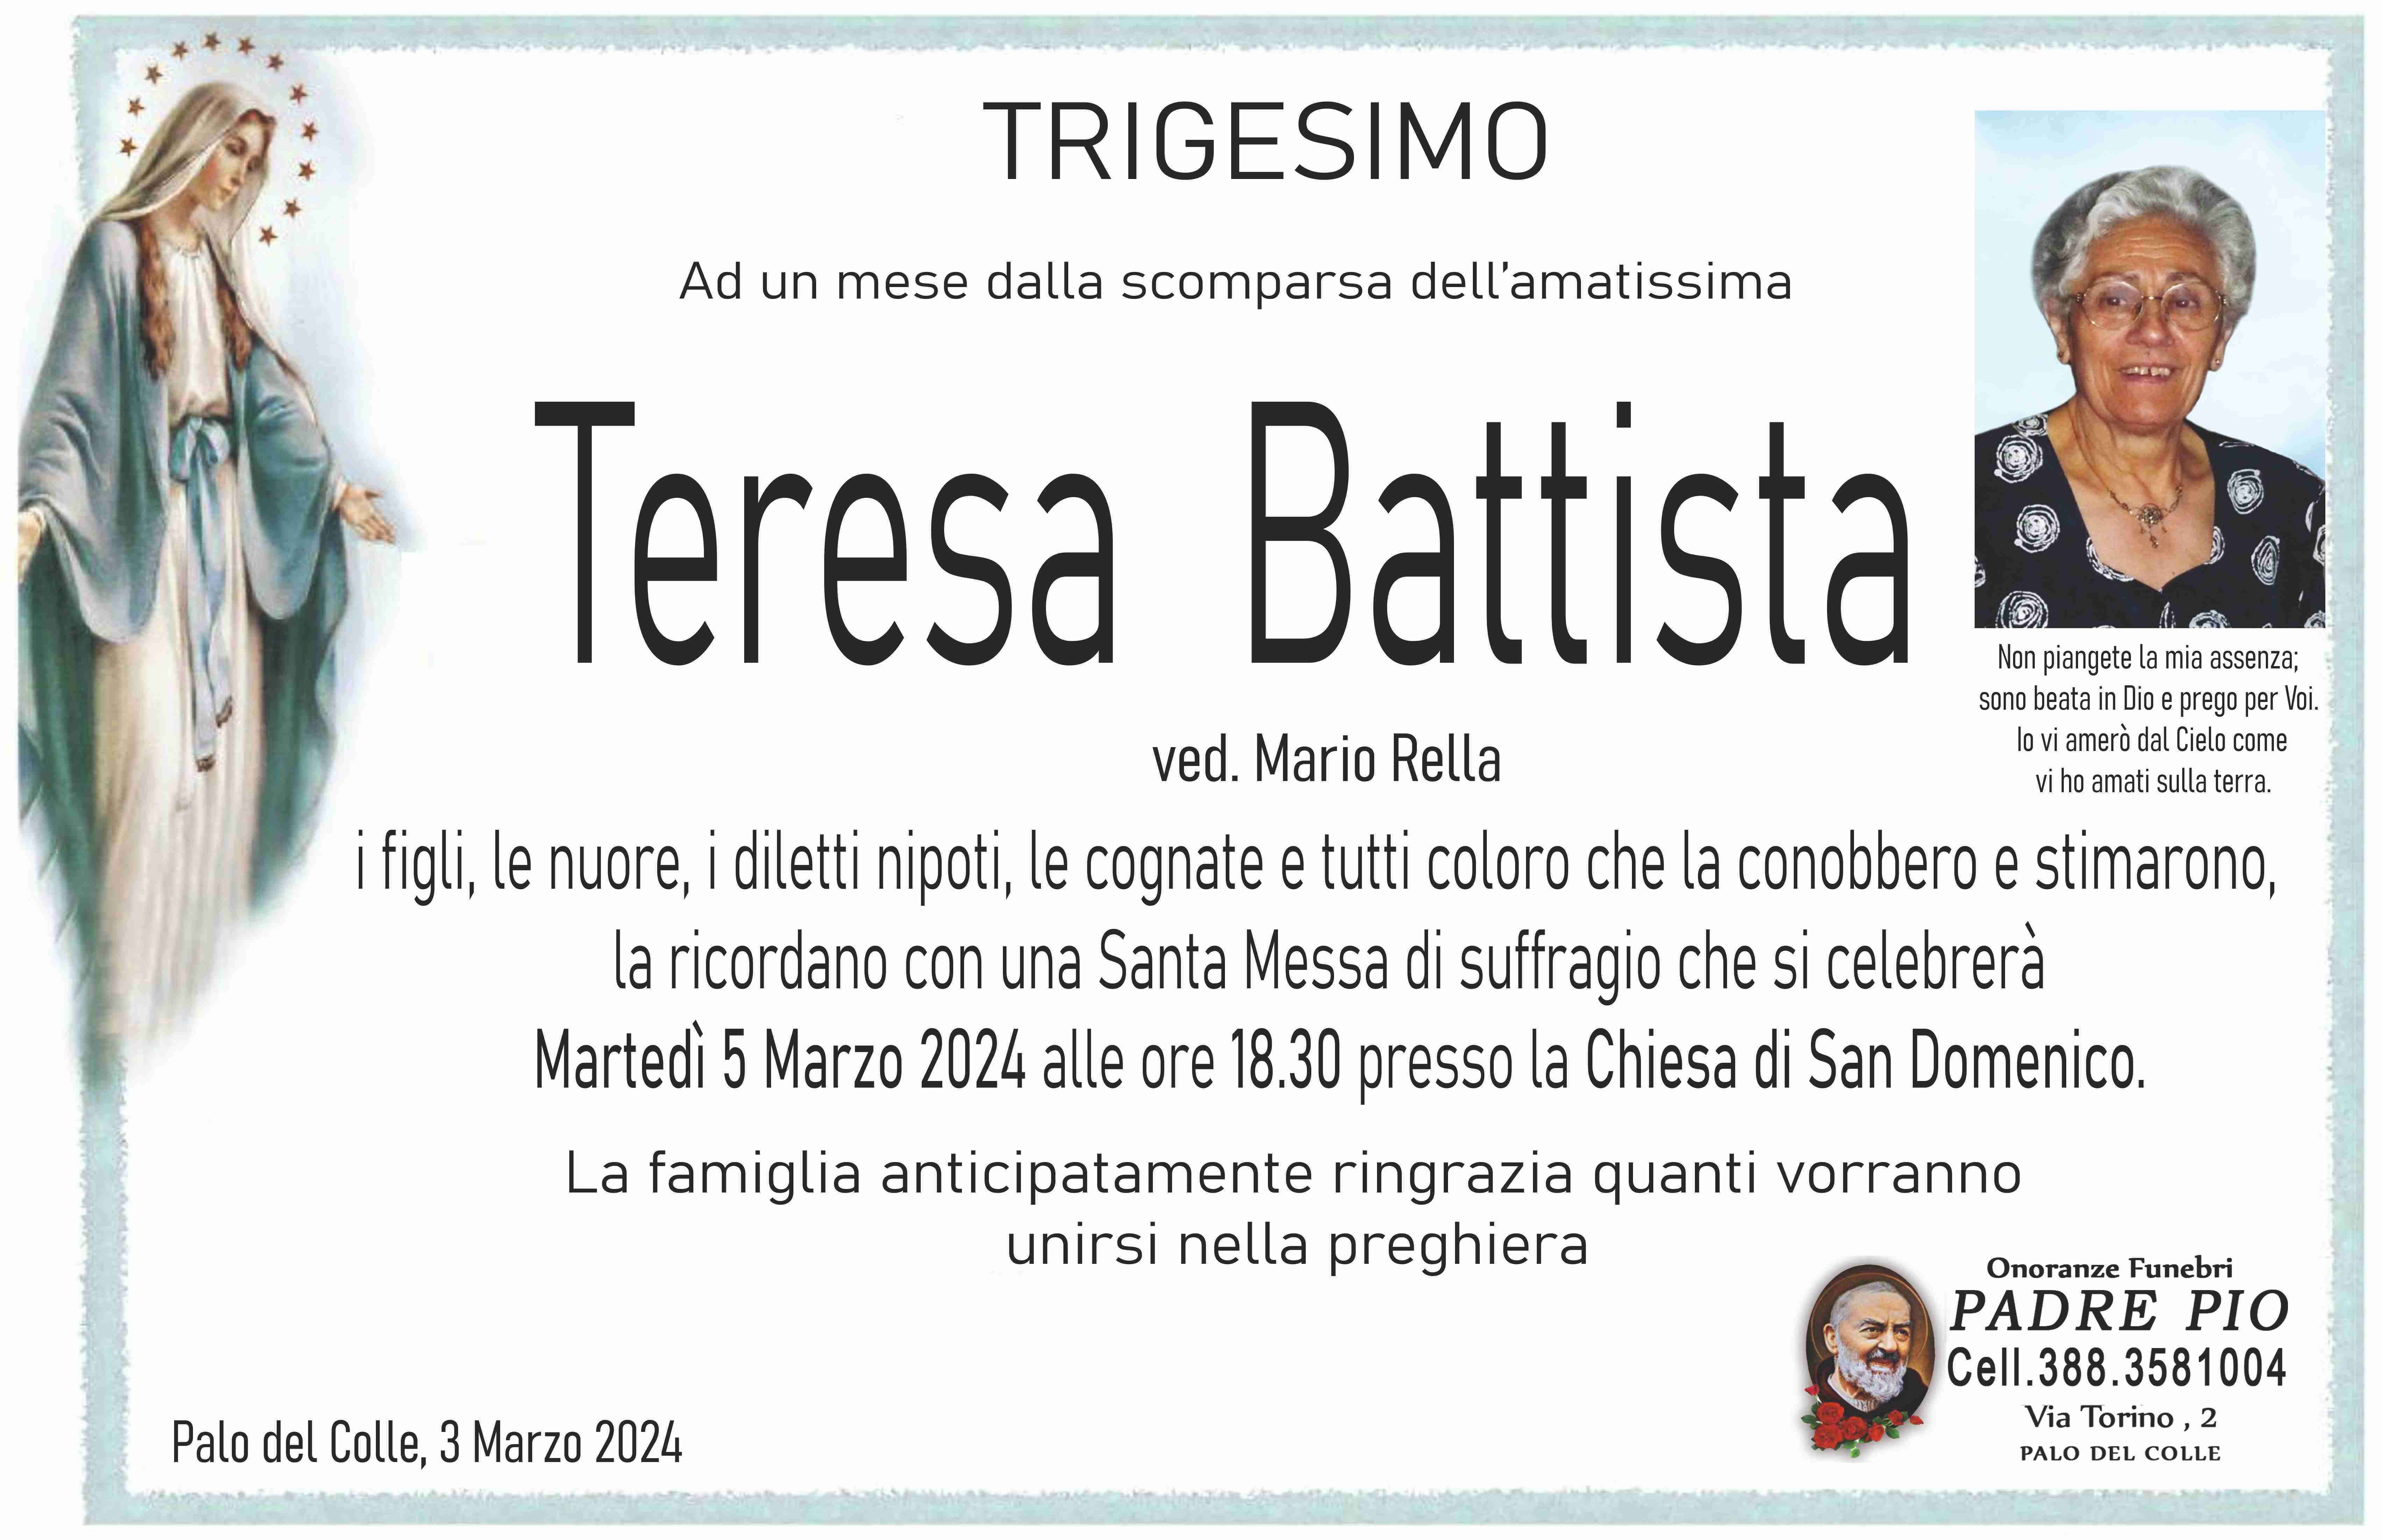 Teresa Battista